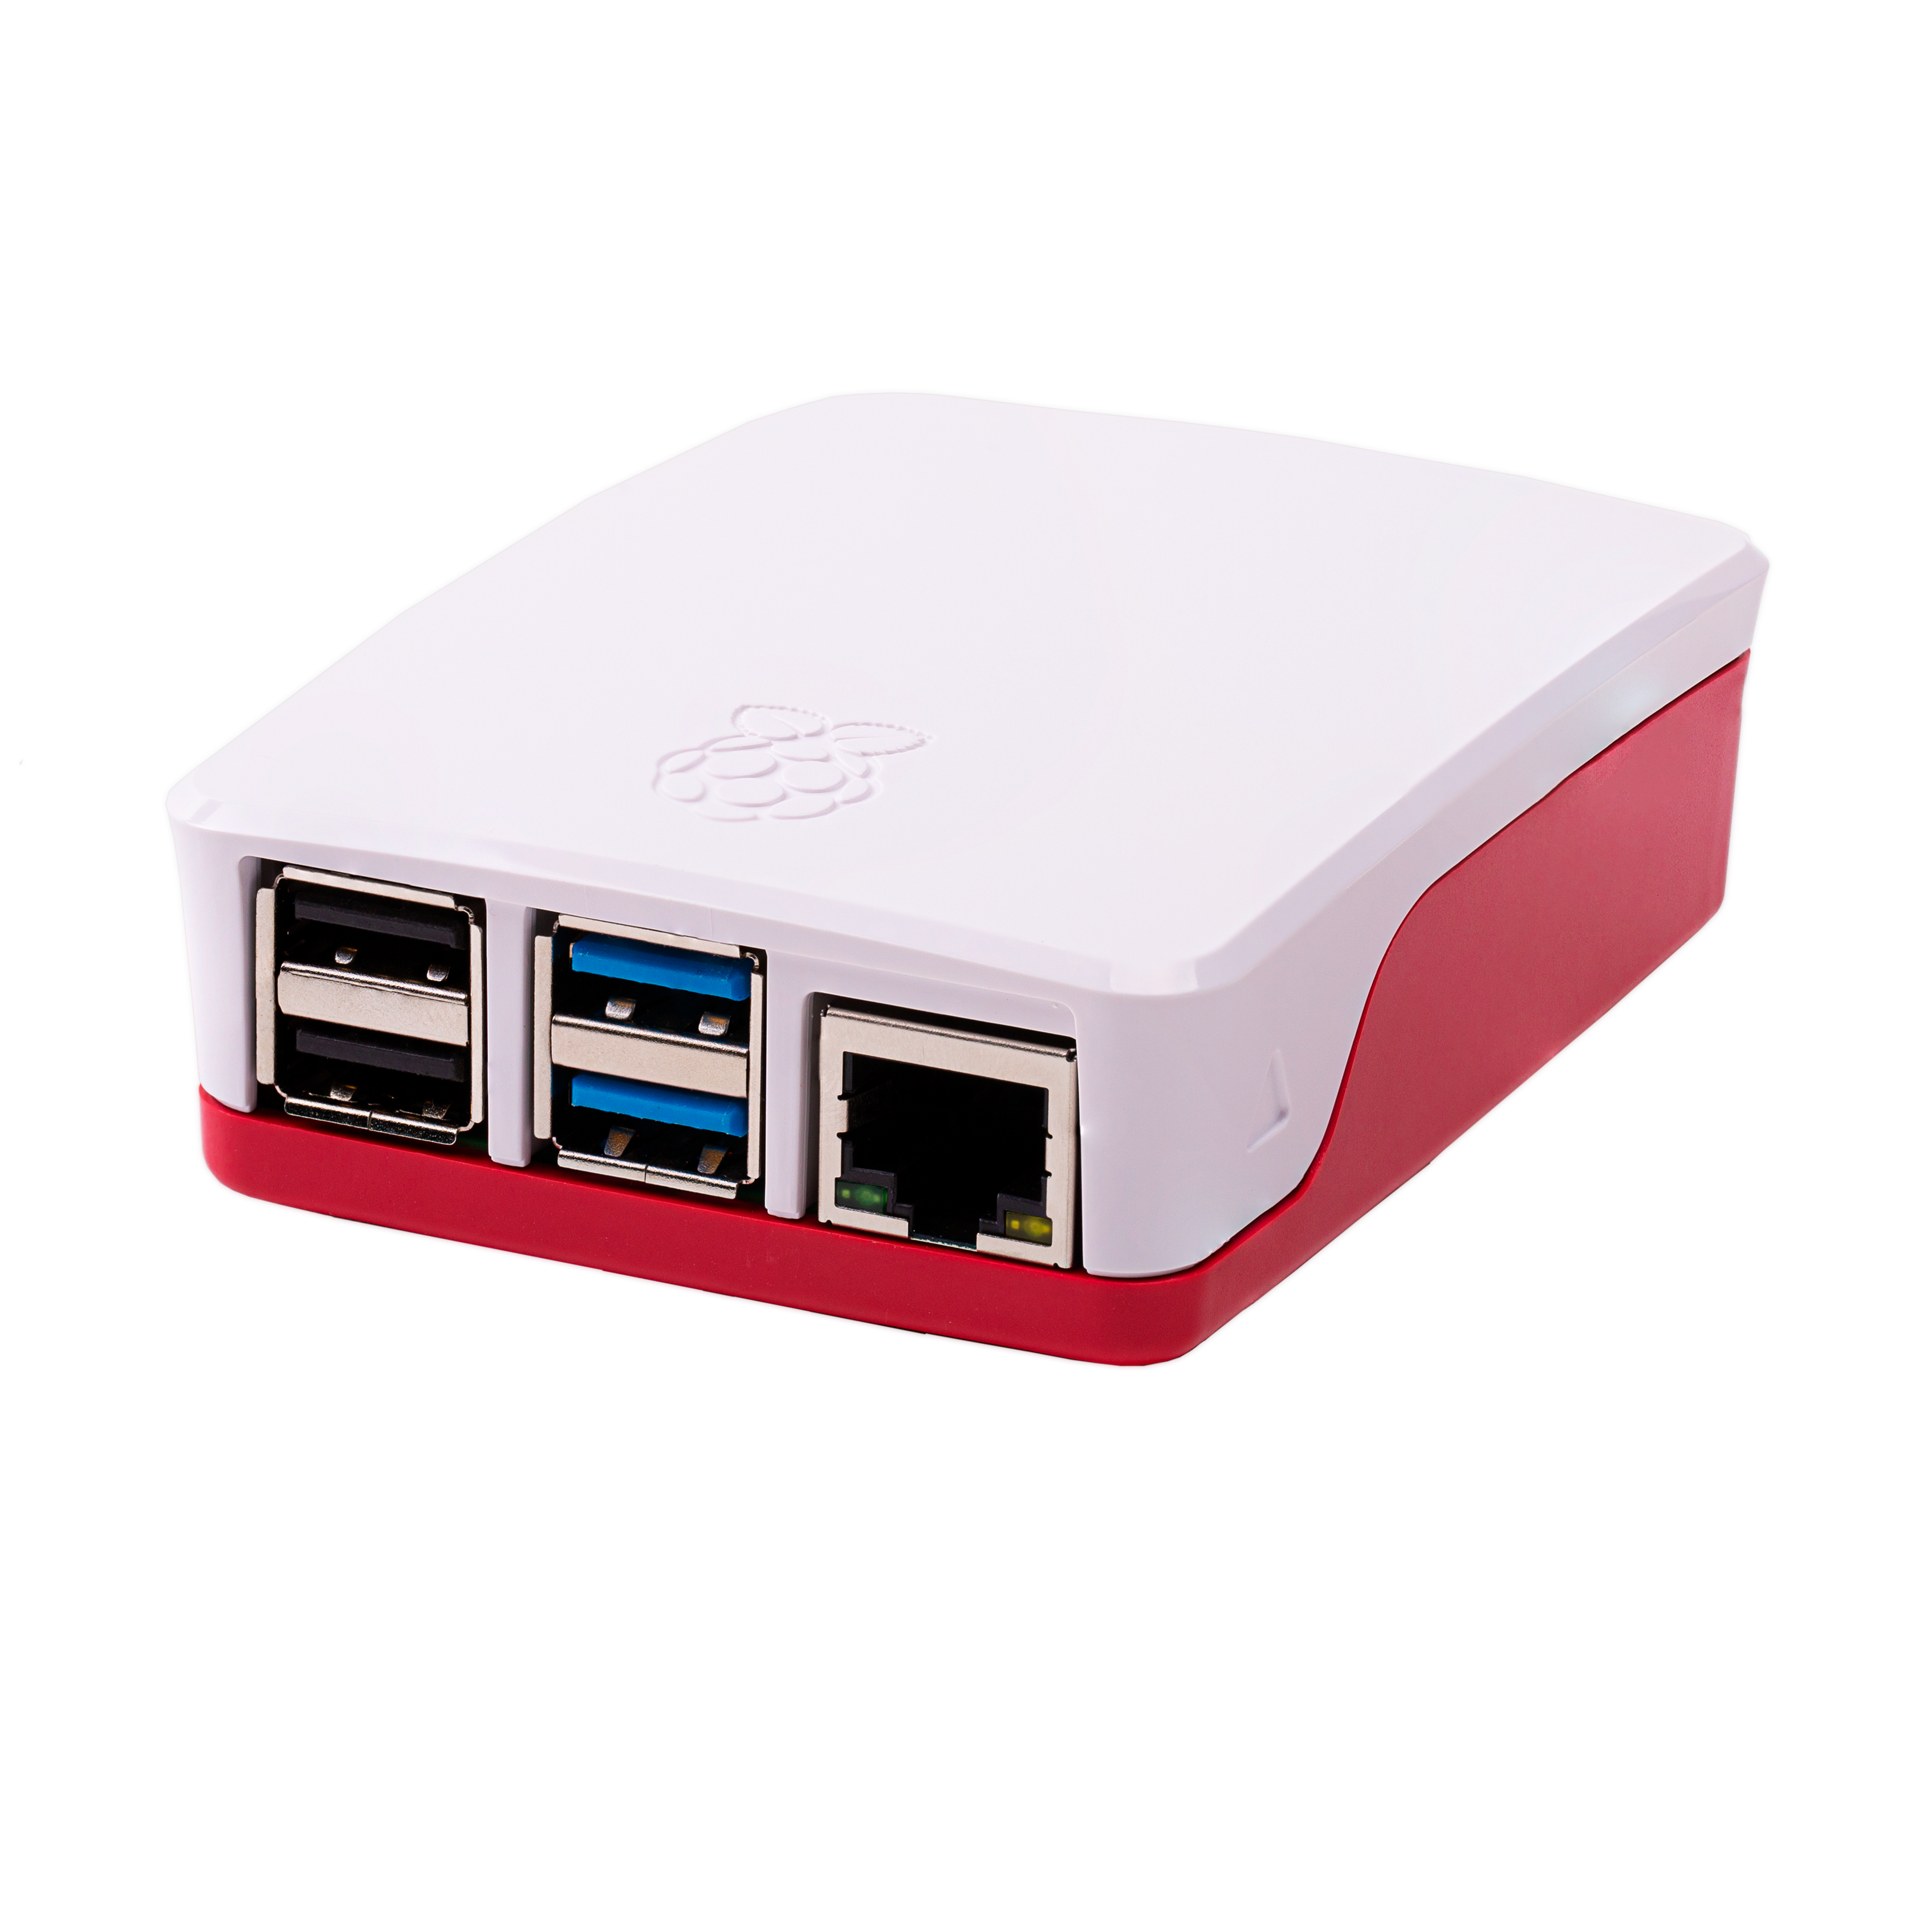 Case originale Raspberry Pi 4 in colorazione rosso/bianco